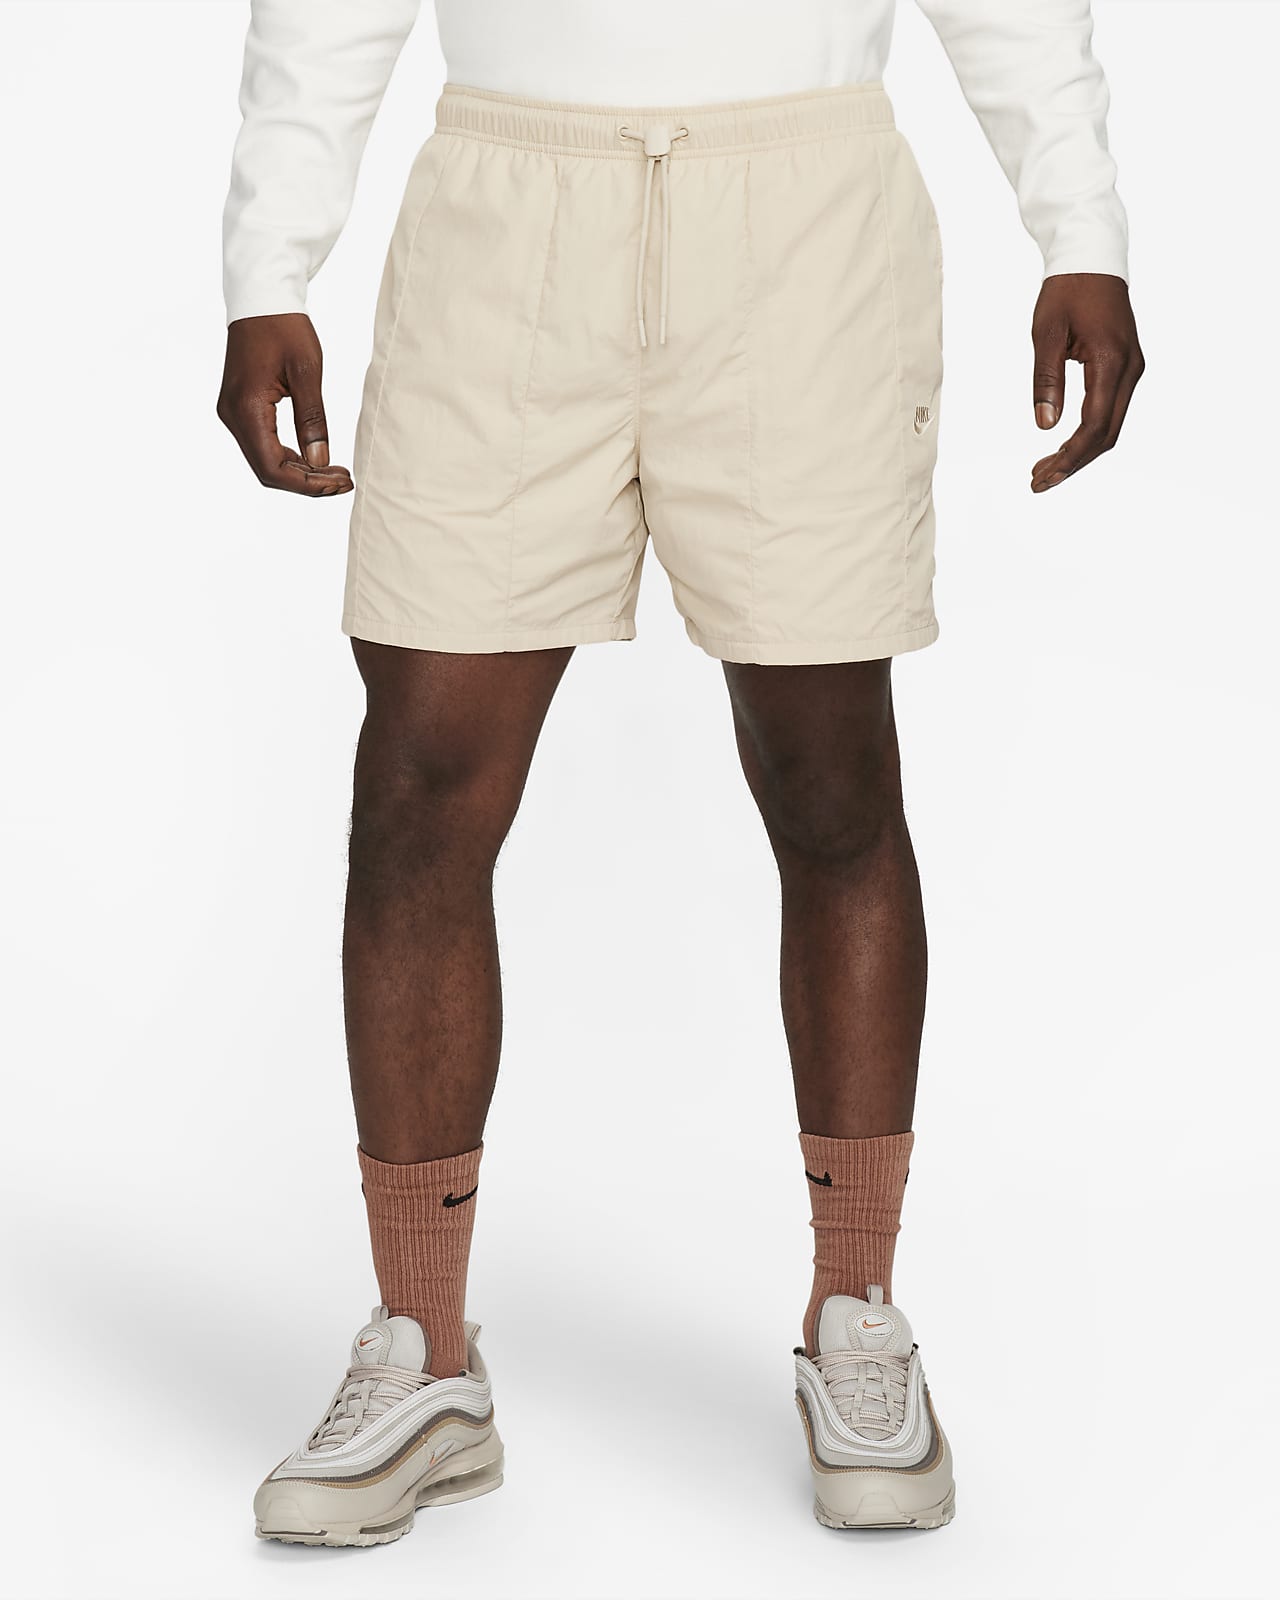 Nike Tech Men's Lined Woven Trousers. Nike LU